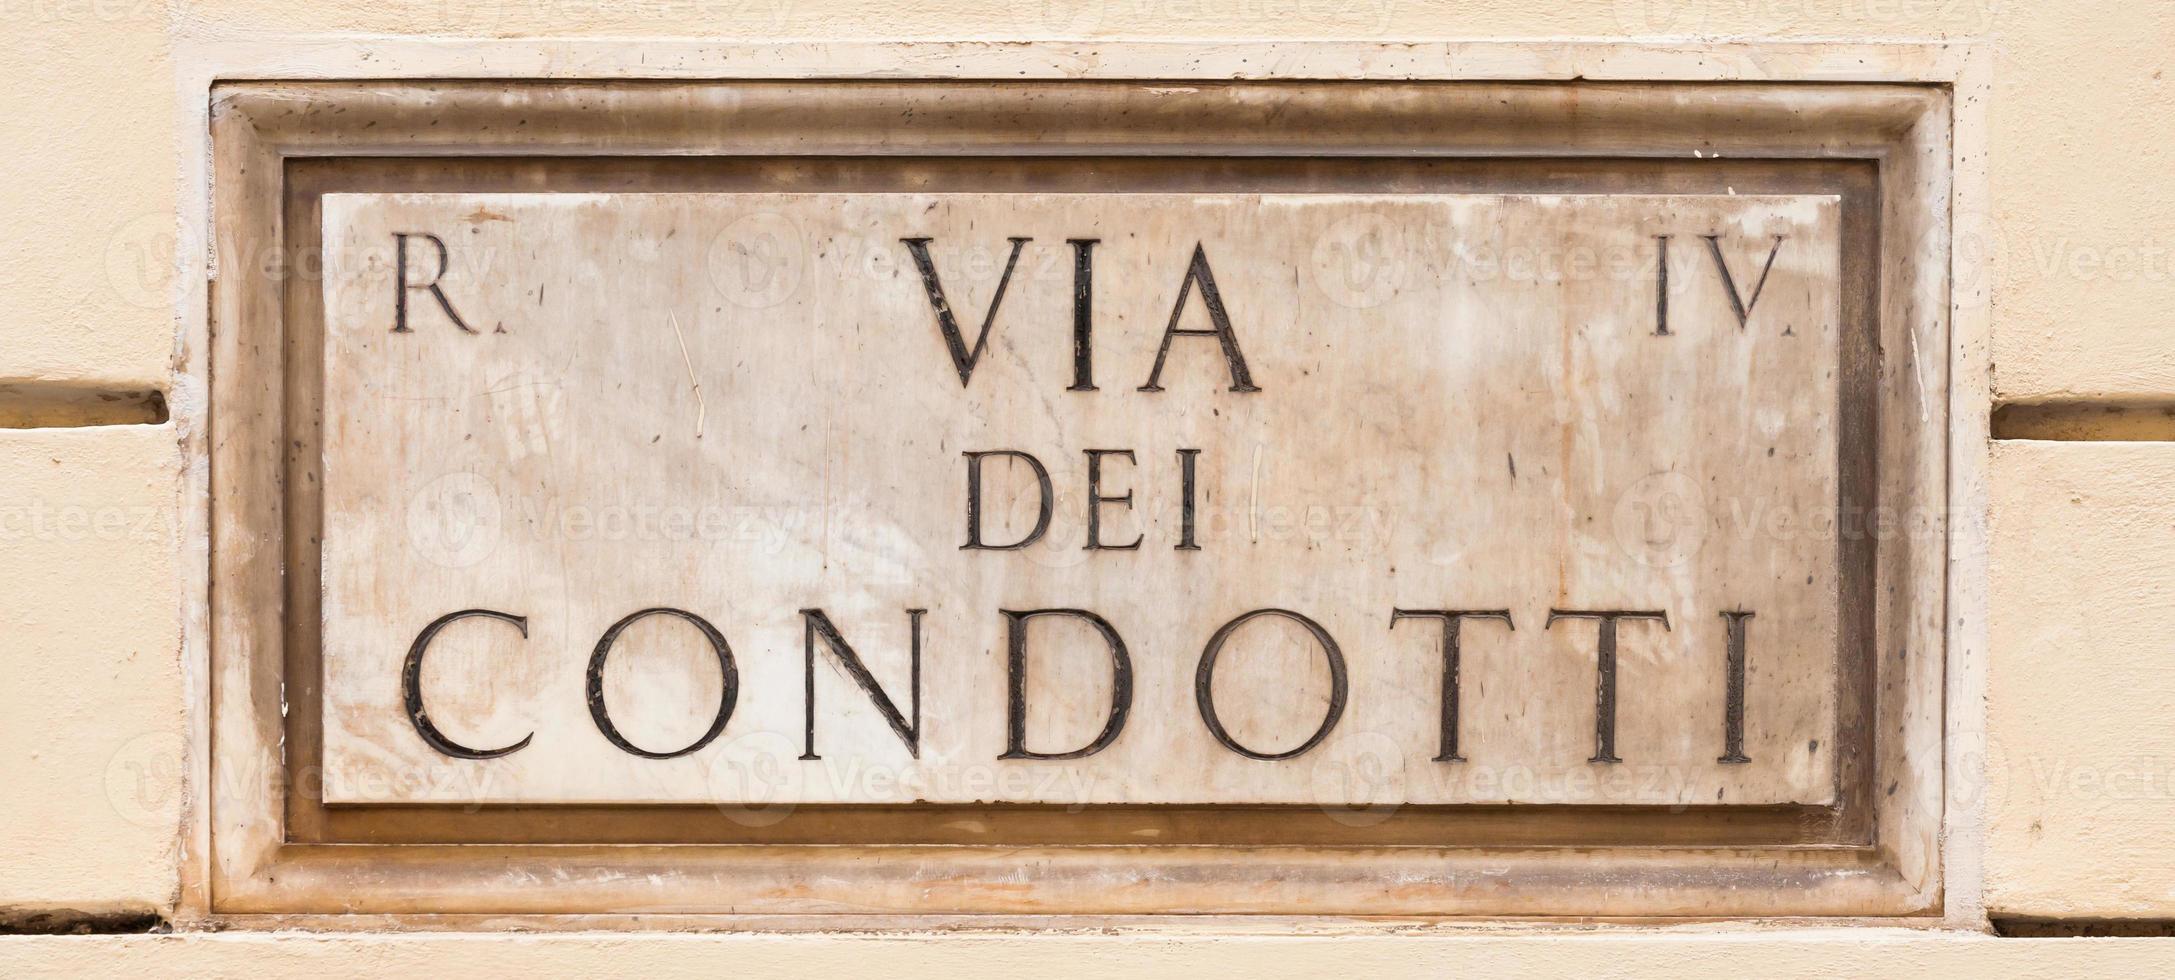 Rome, Italië. straatplaat van de beroemde condotti-weg - via dei condotti - centrum van de Romeinse luxe winkels. foto